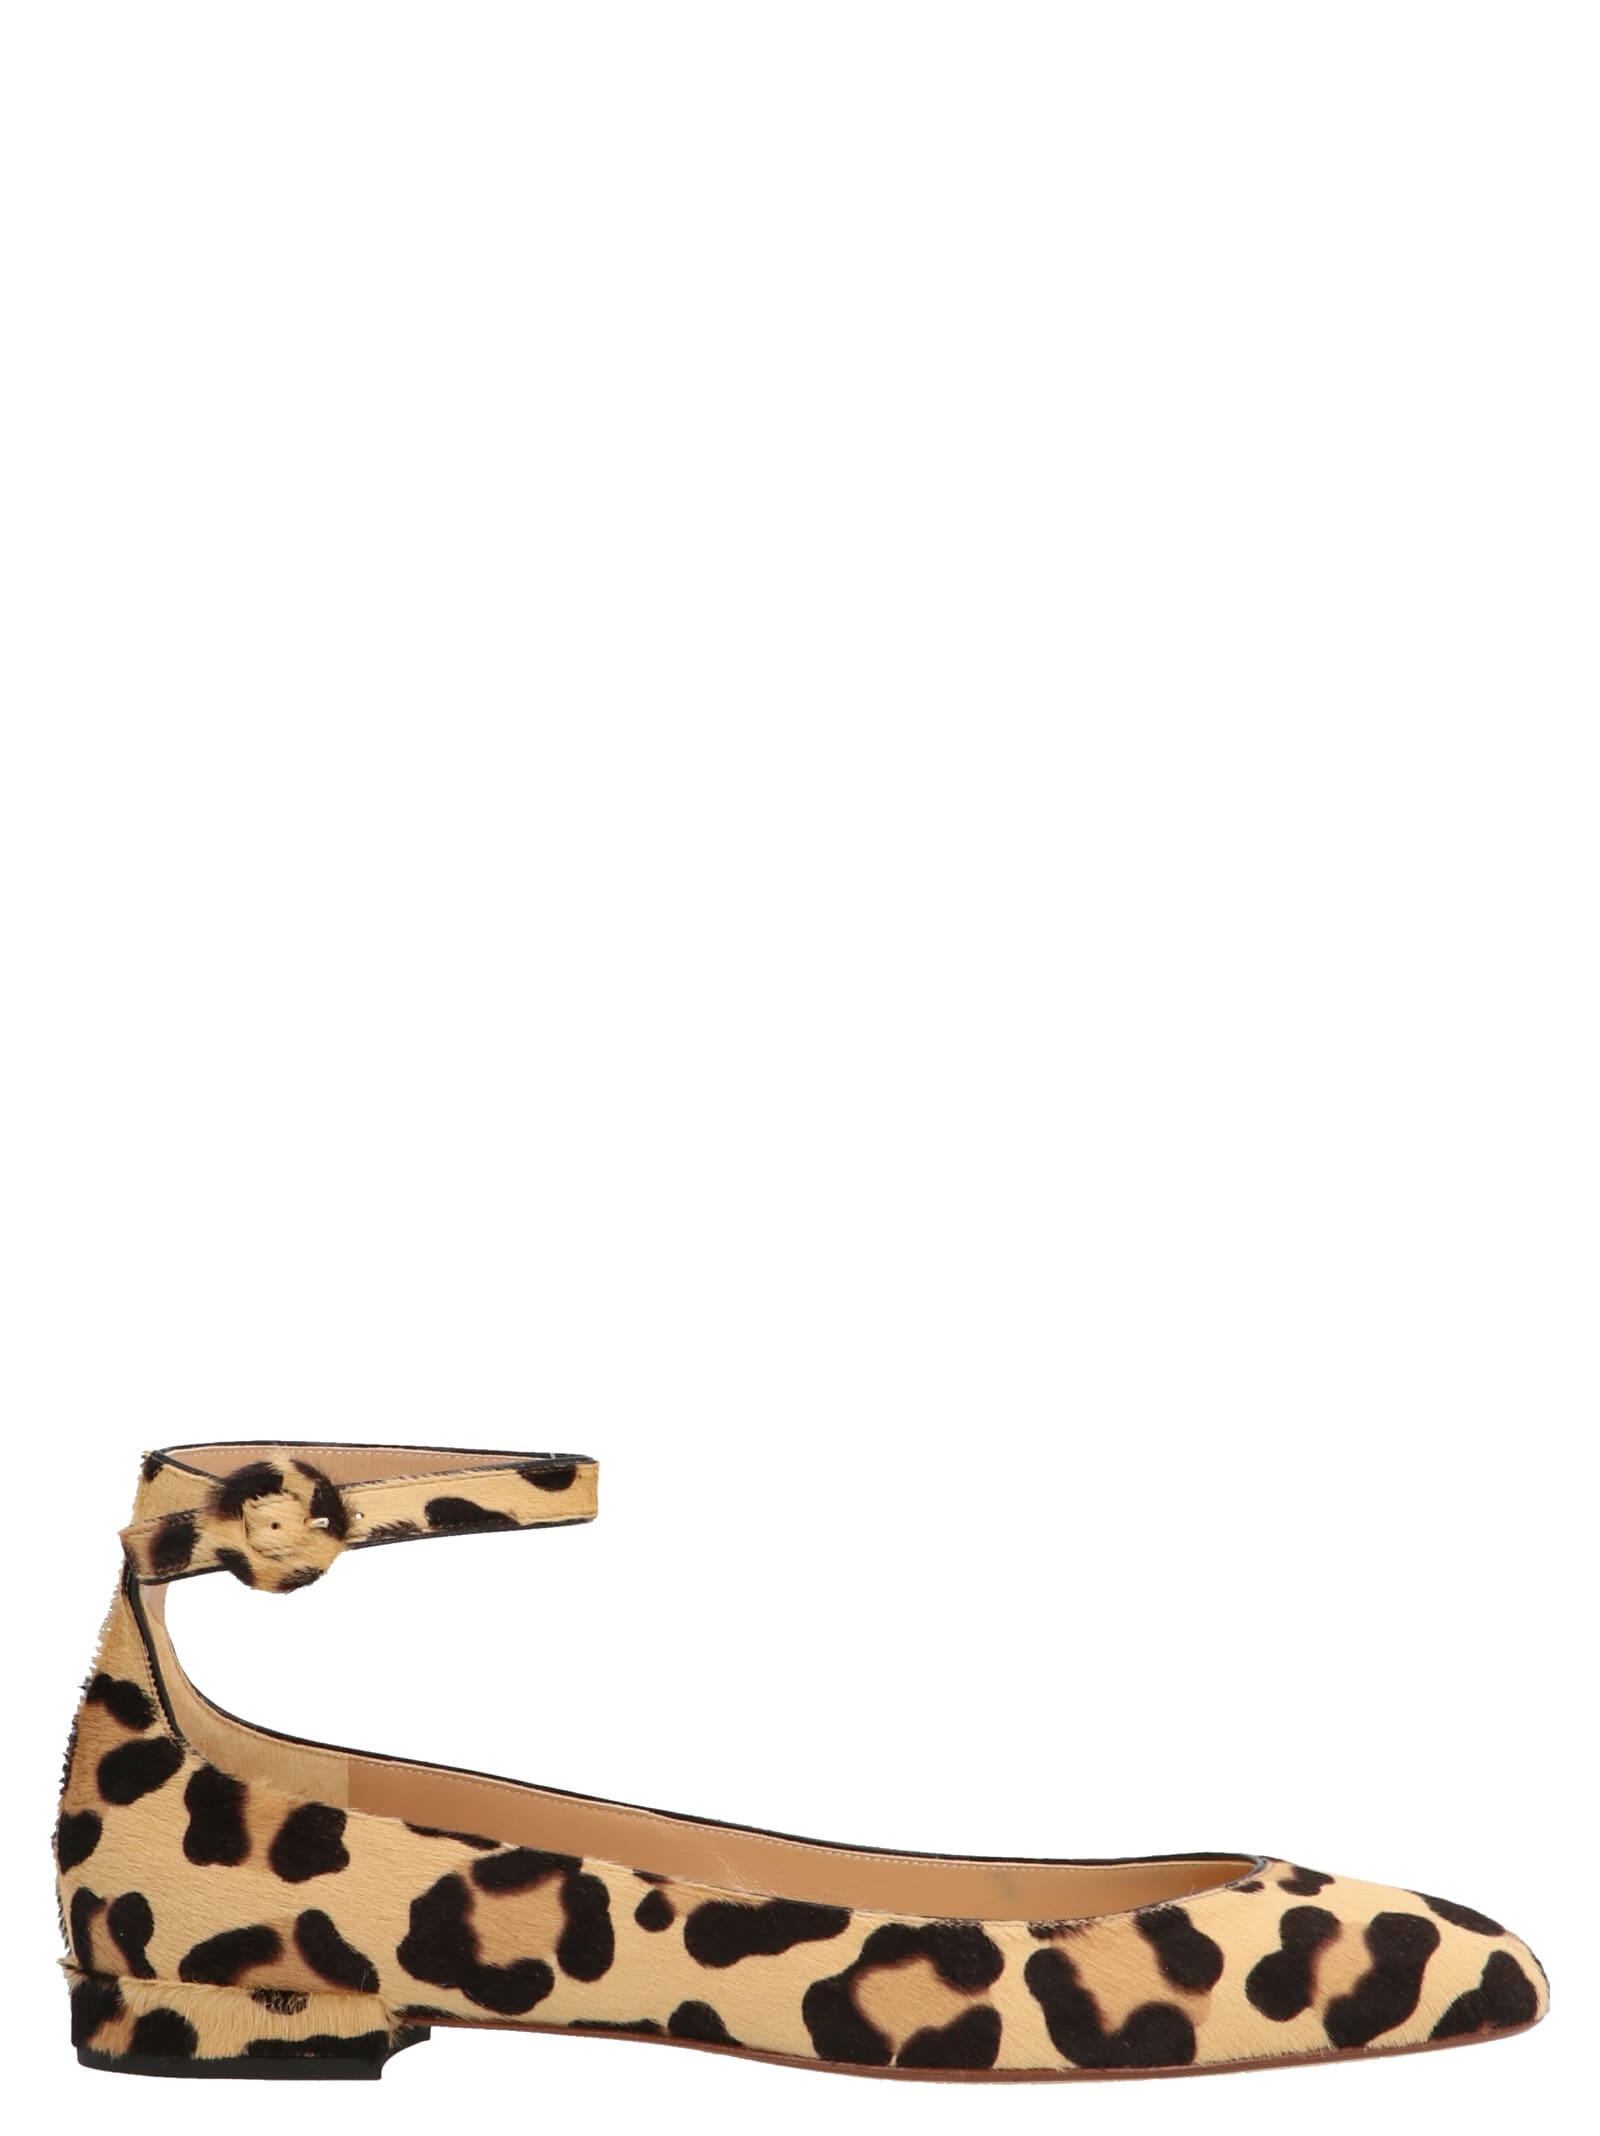 Francesco Russo leopard Shoes